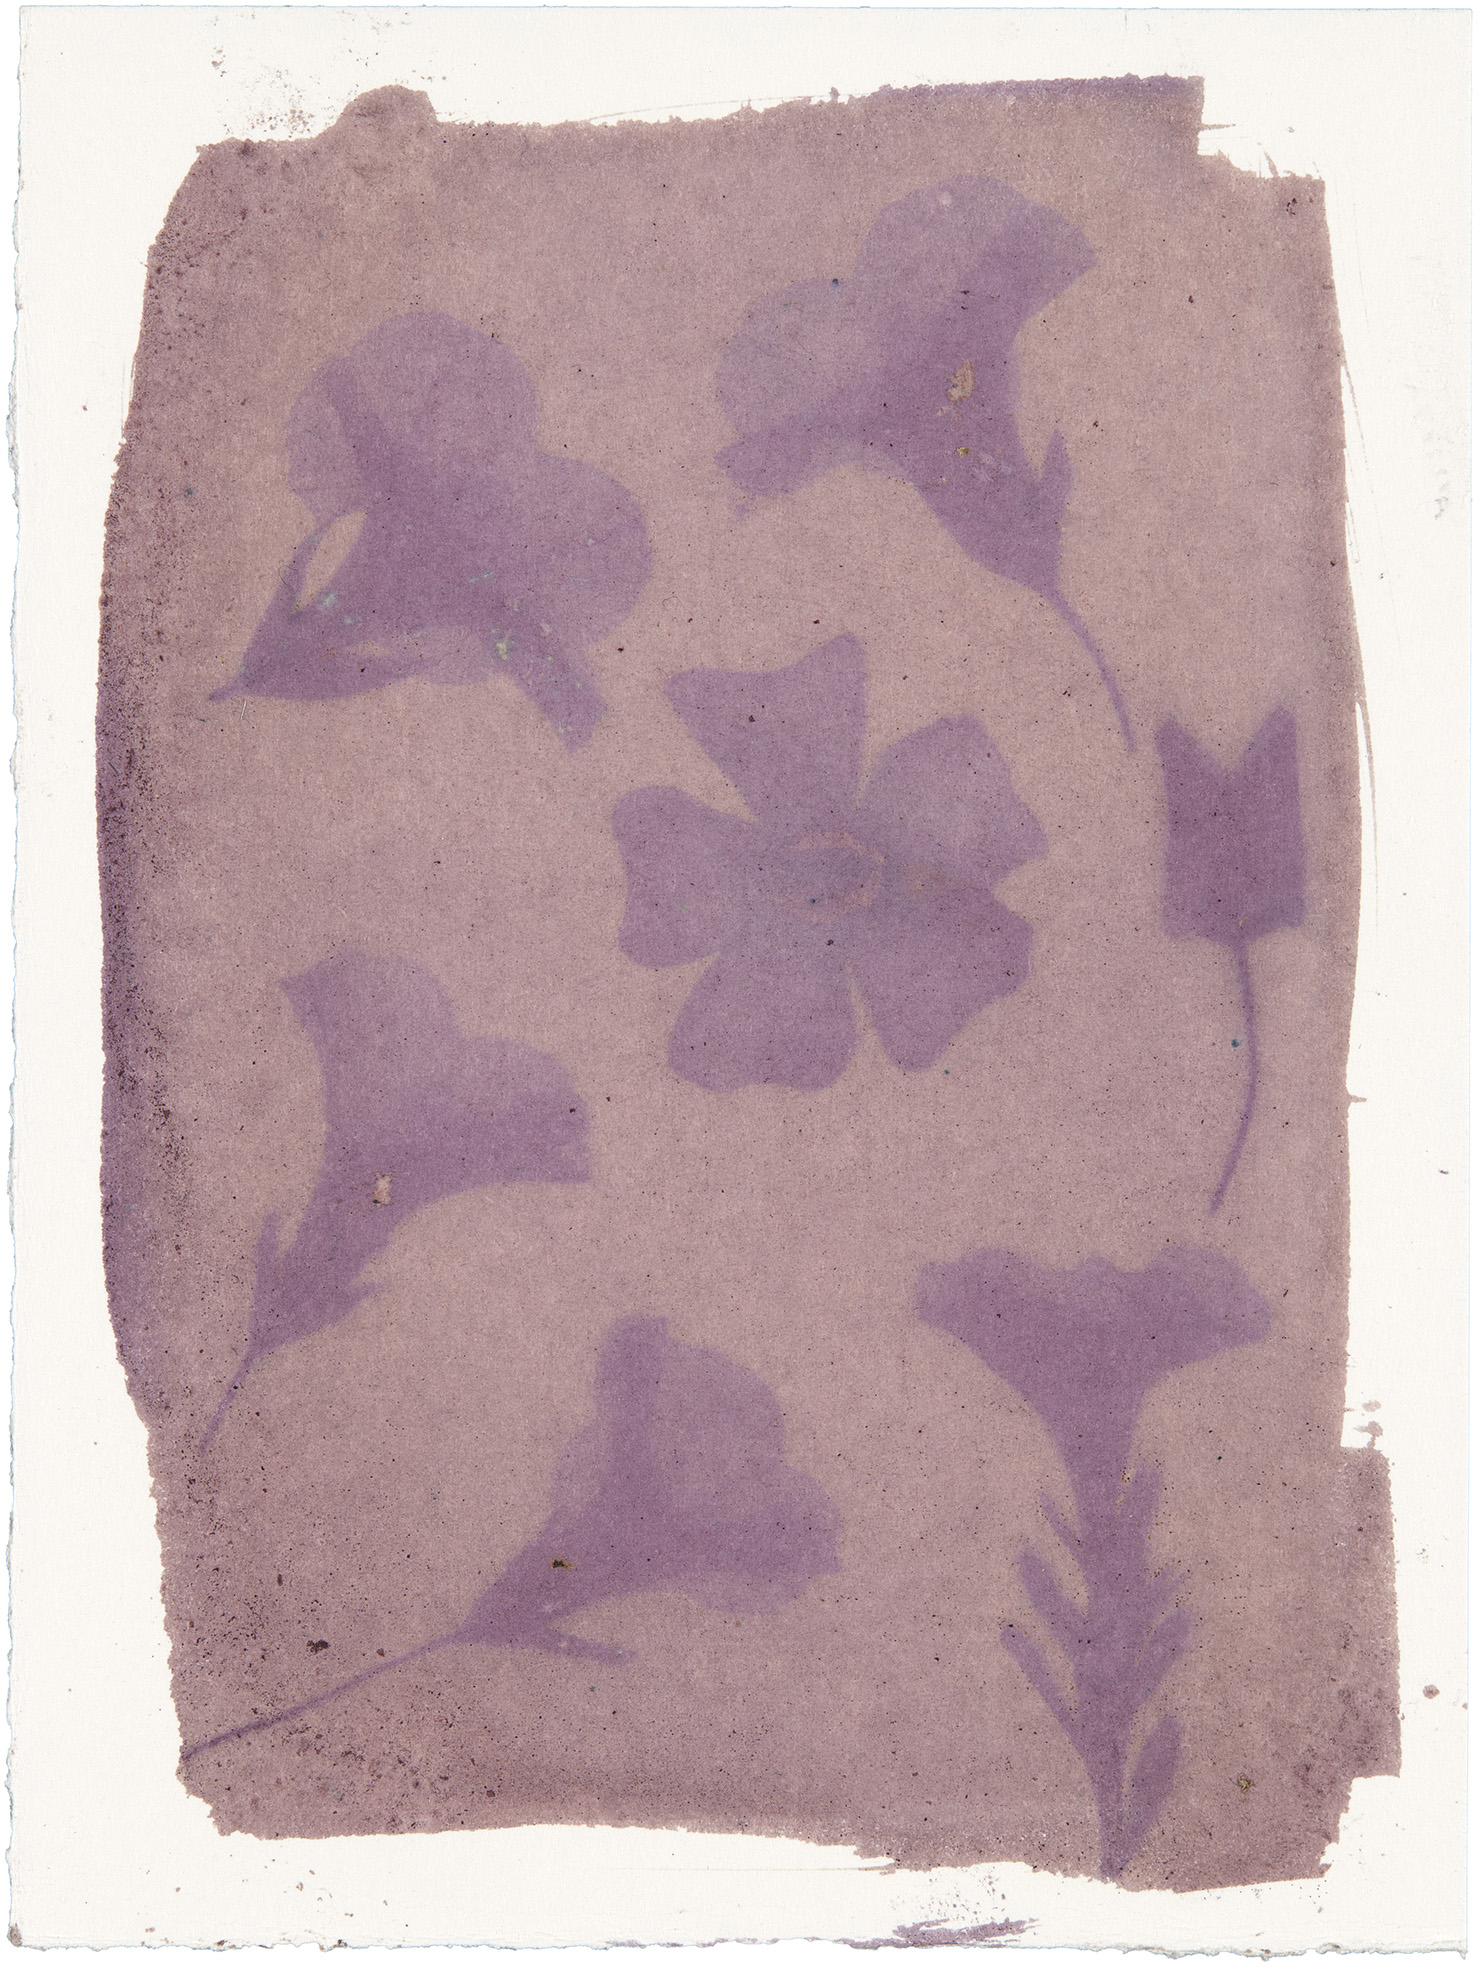 Punaisen ja violetin sävyinen herkkä anthotypia, joka esittää irtonaisia kukkasia, jotka on levitetty tasolle.